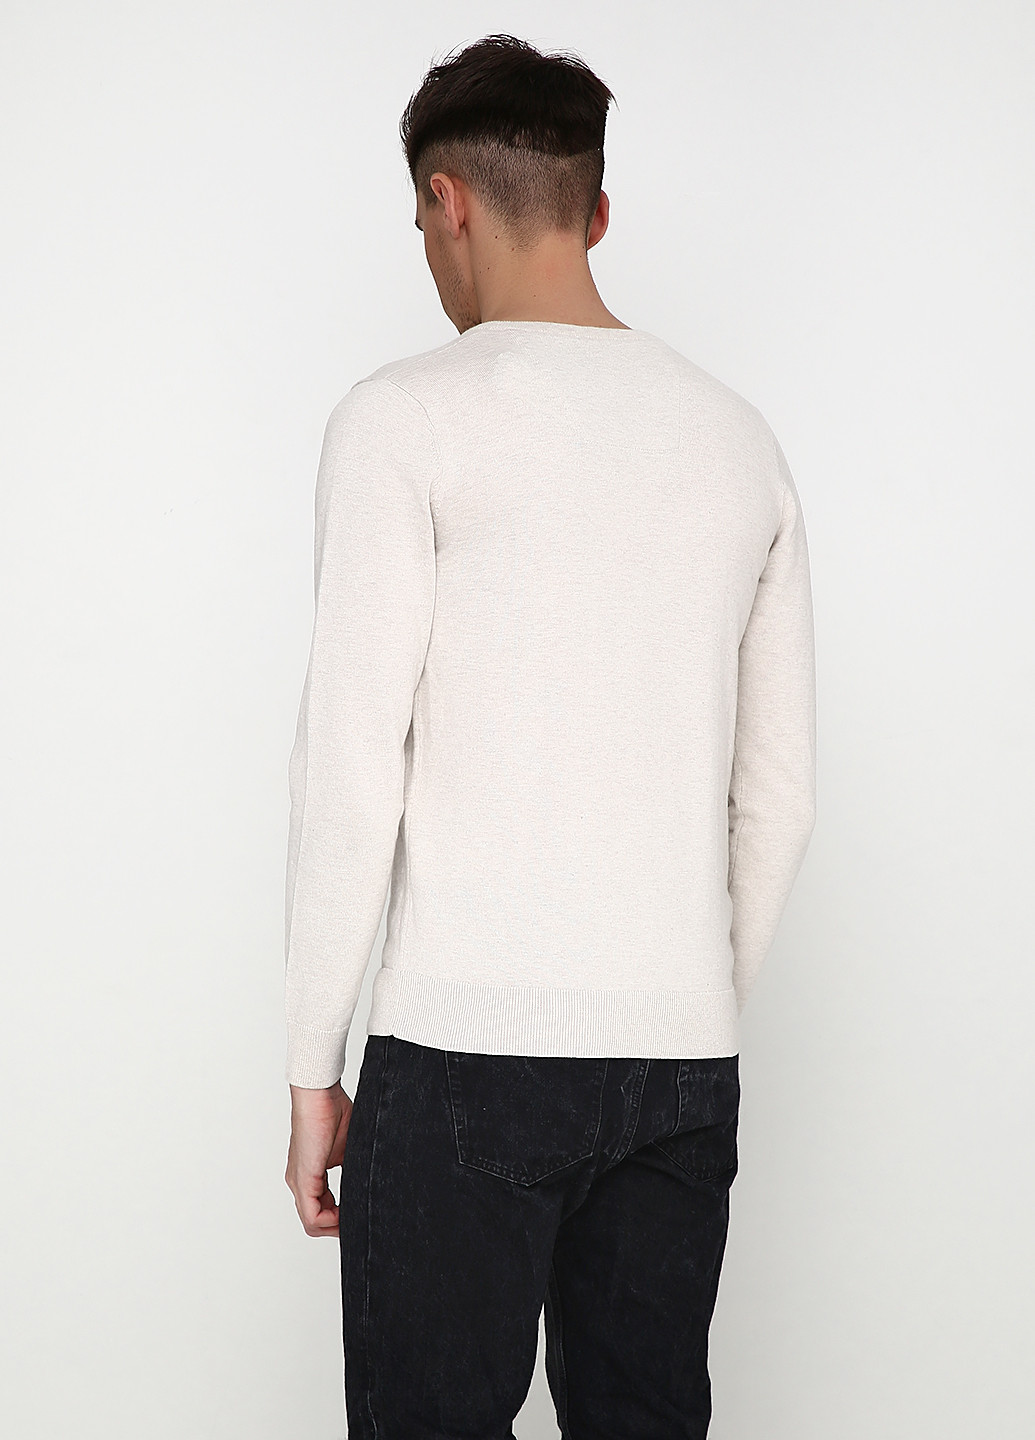 Светло-бежевый демисезонный пуловер пуловер Tom Tailor